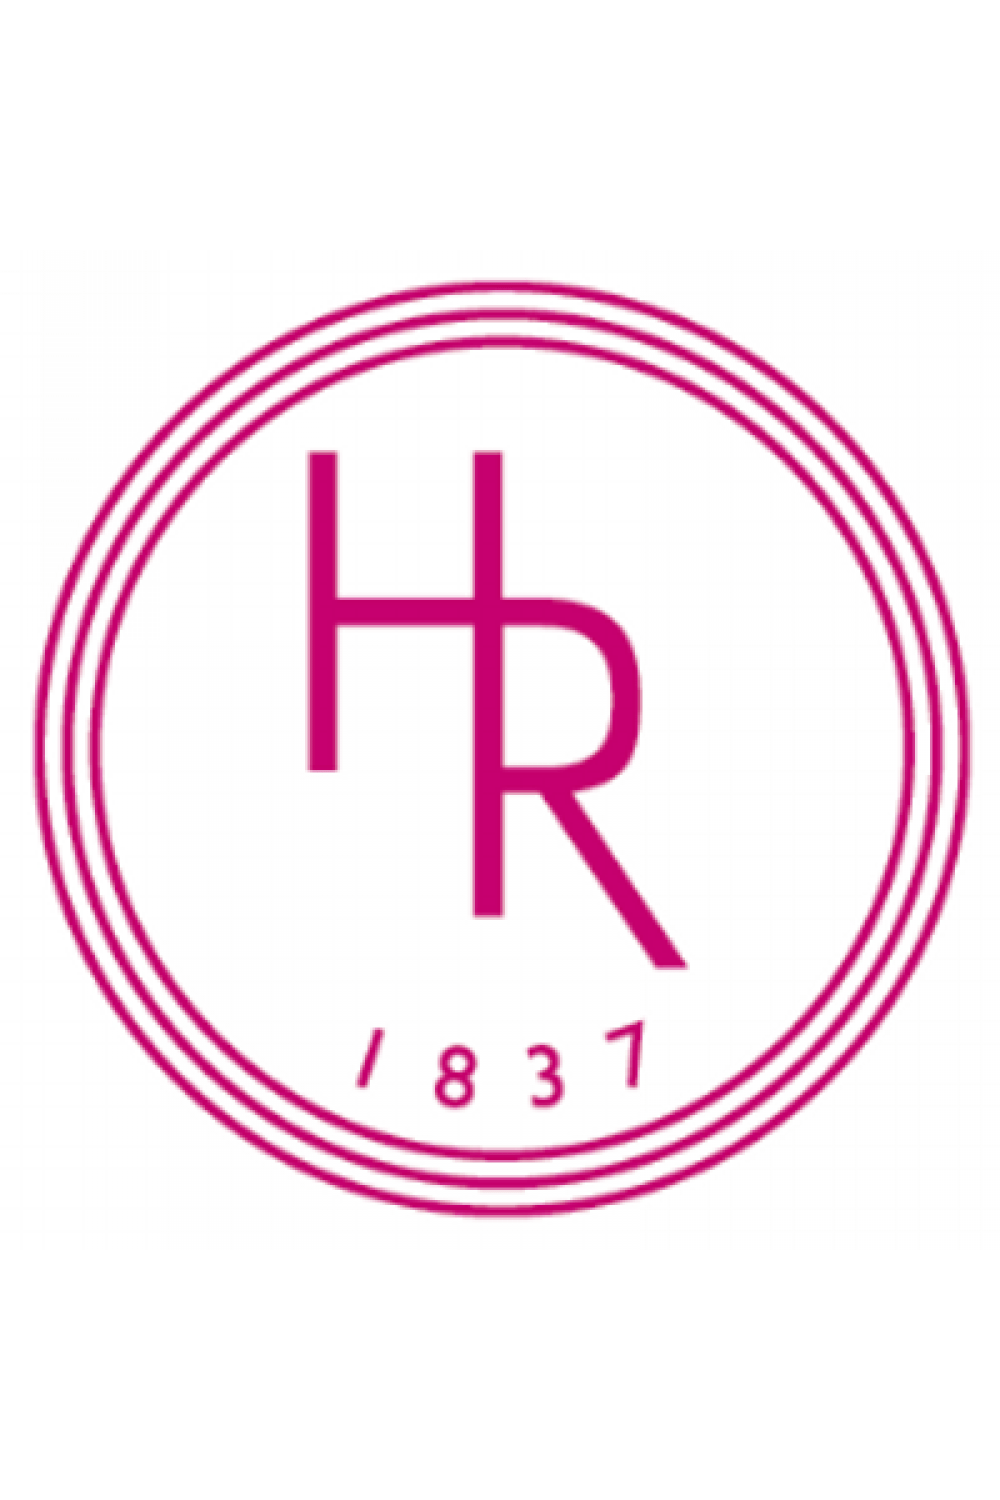 Holt Renfrew Logo - Holt Renfrew - Bloor Yorkville